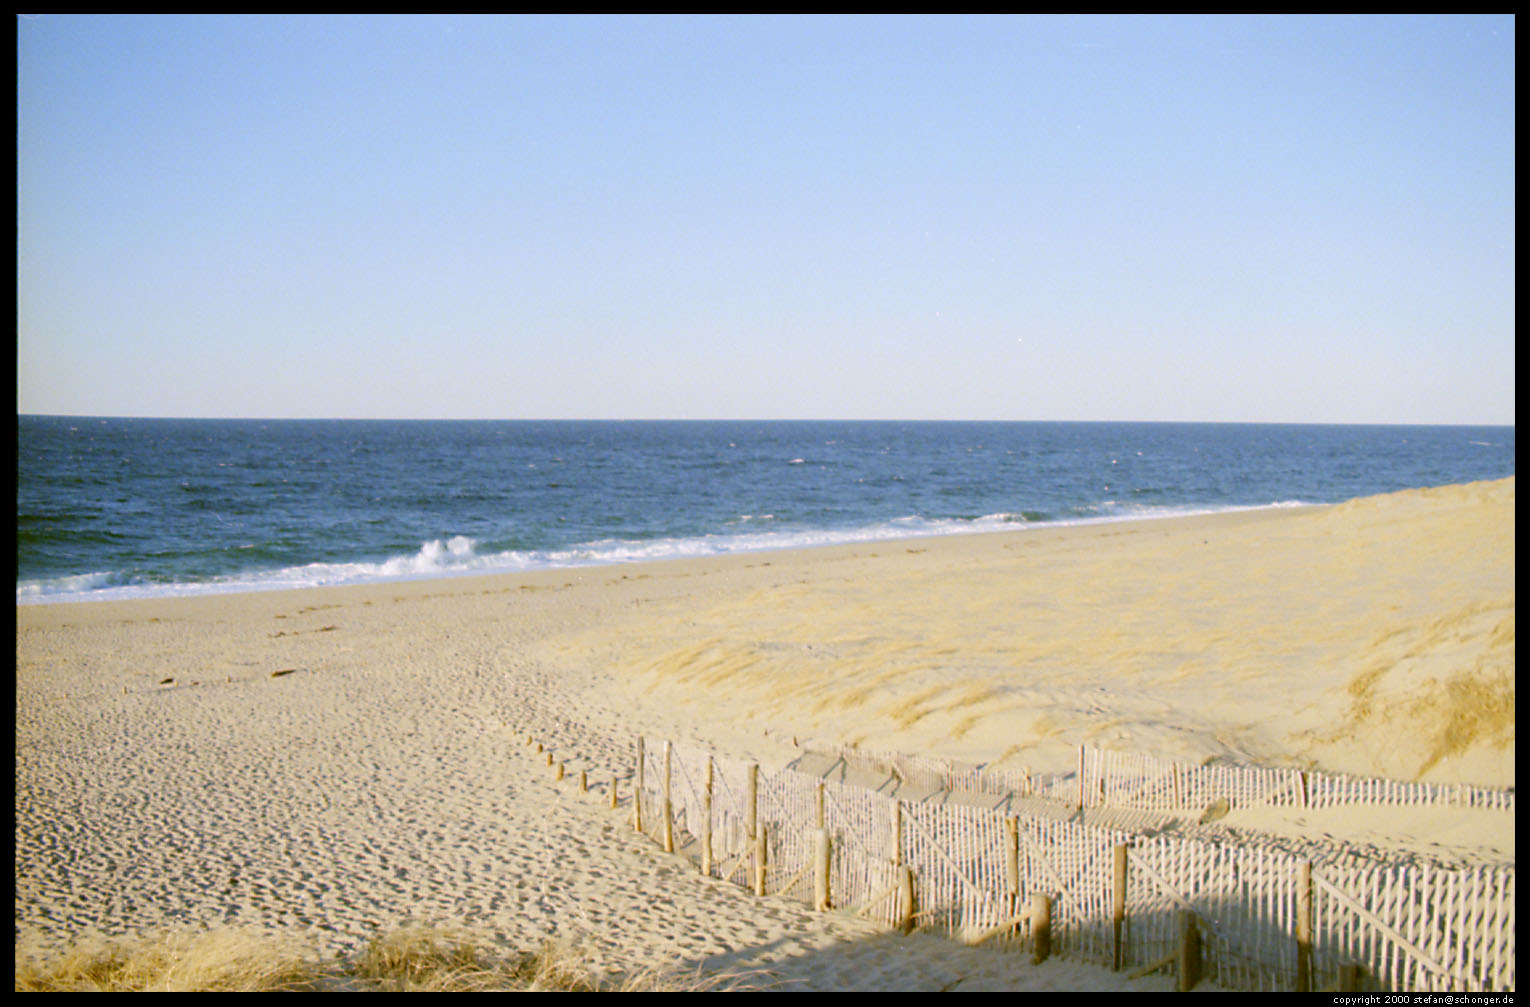 Provincetown dunes, Cape Cod, Mar 2000